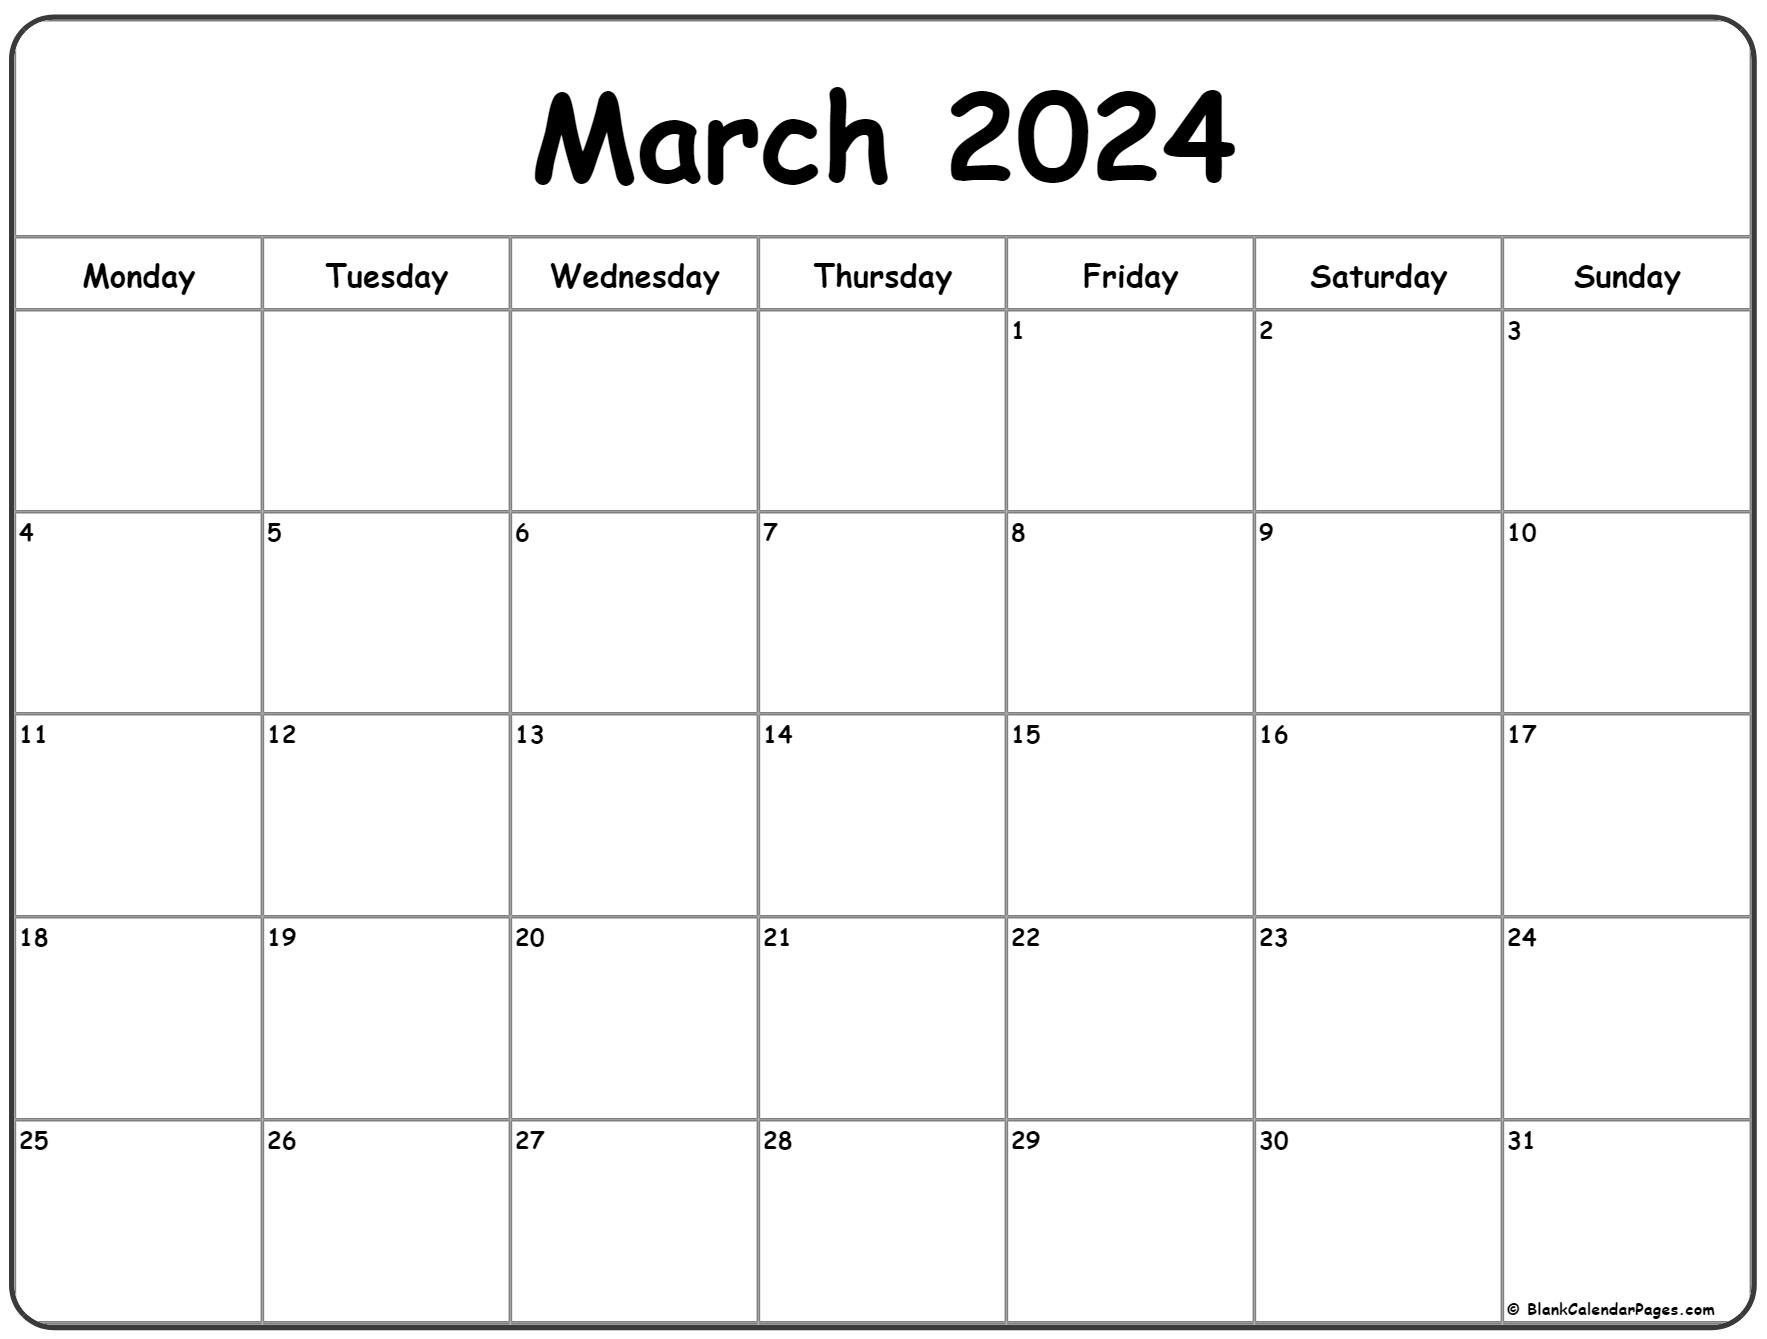 March 2024 Monday Calendar | Monday To Sunday | Printable Calendar 2024 March